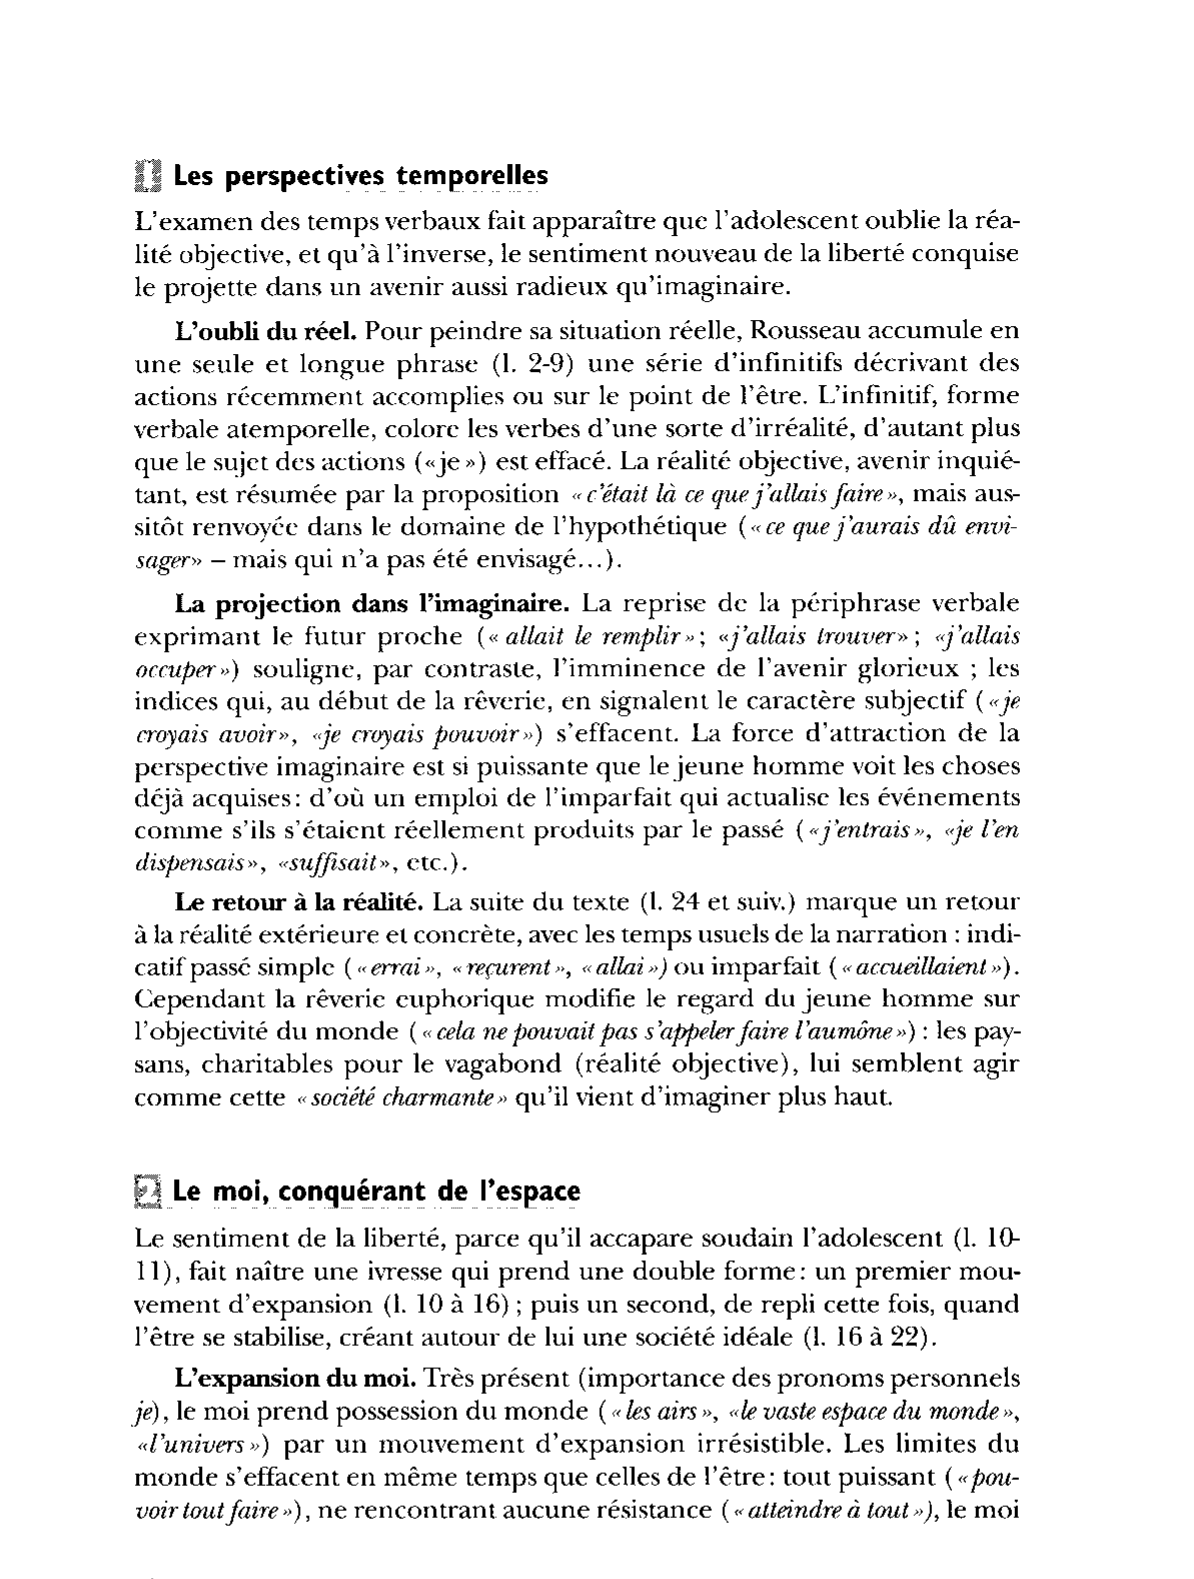 Prévisualisation du document L'euphorie de la liberté  Livre II, Folio (Gallimard), pp. 79-80 - Rousseau